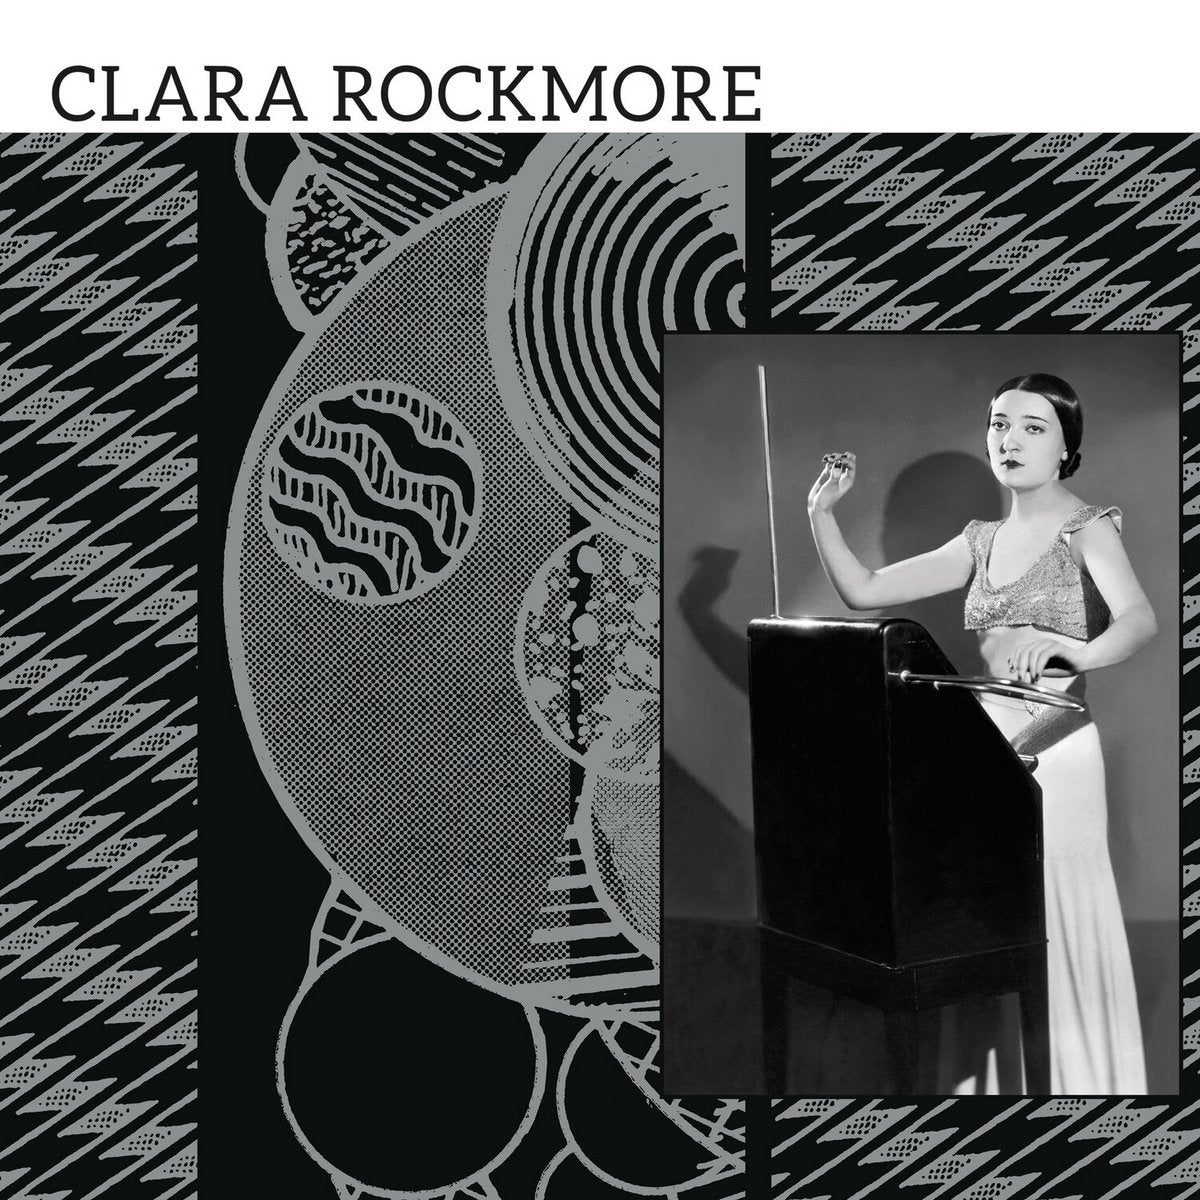 Rockmore, Clara "The Lost Theremin Album"